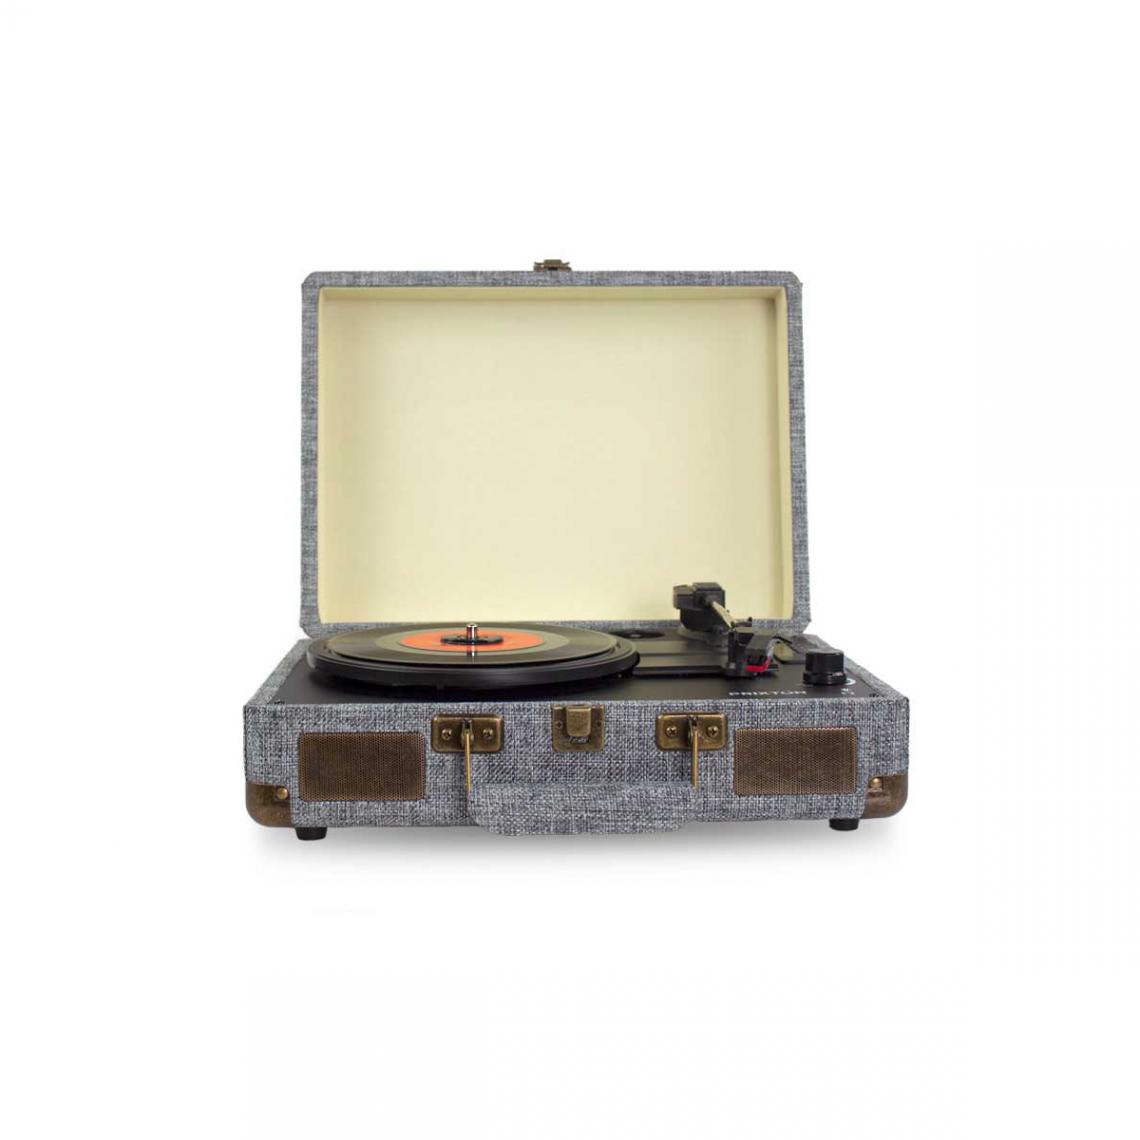 Prixton - Tourne-disque vinyle VC400 - Bluetooth - Gris - Platine